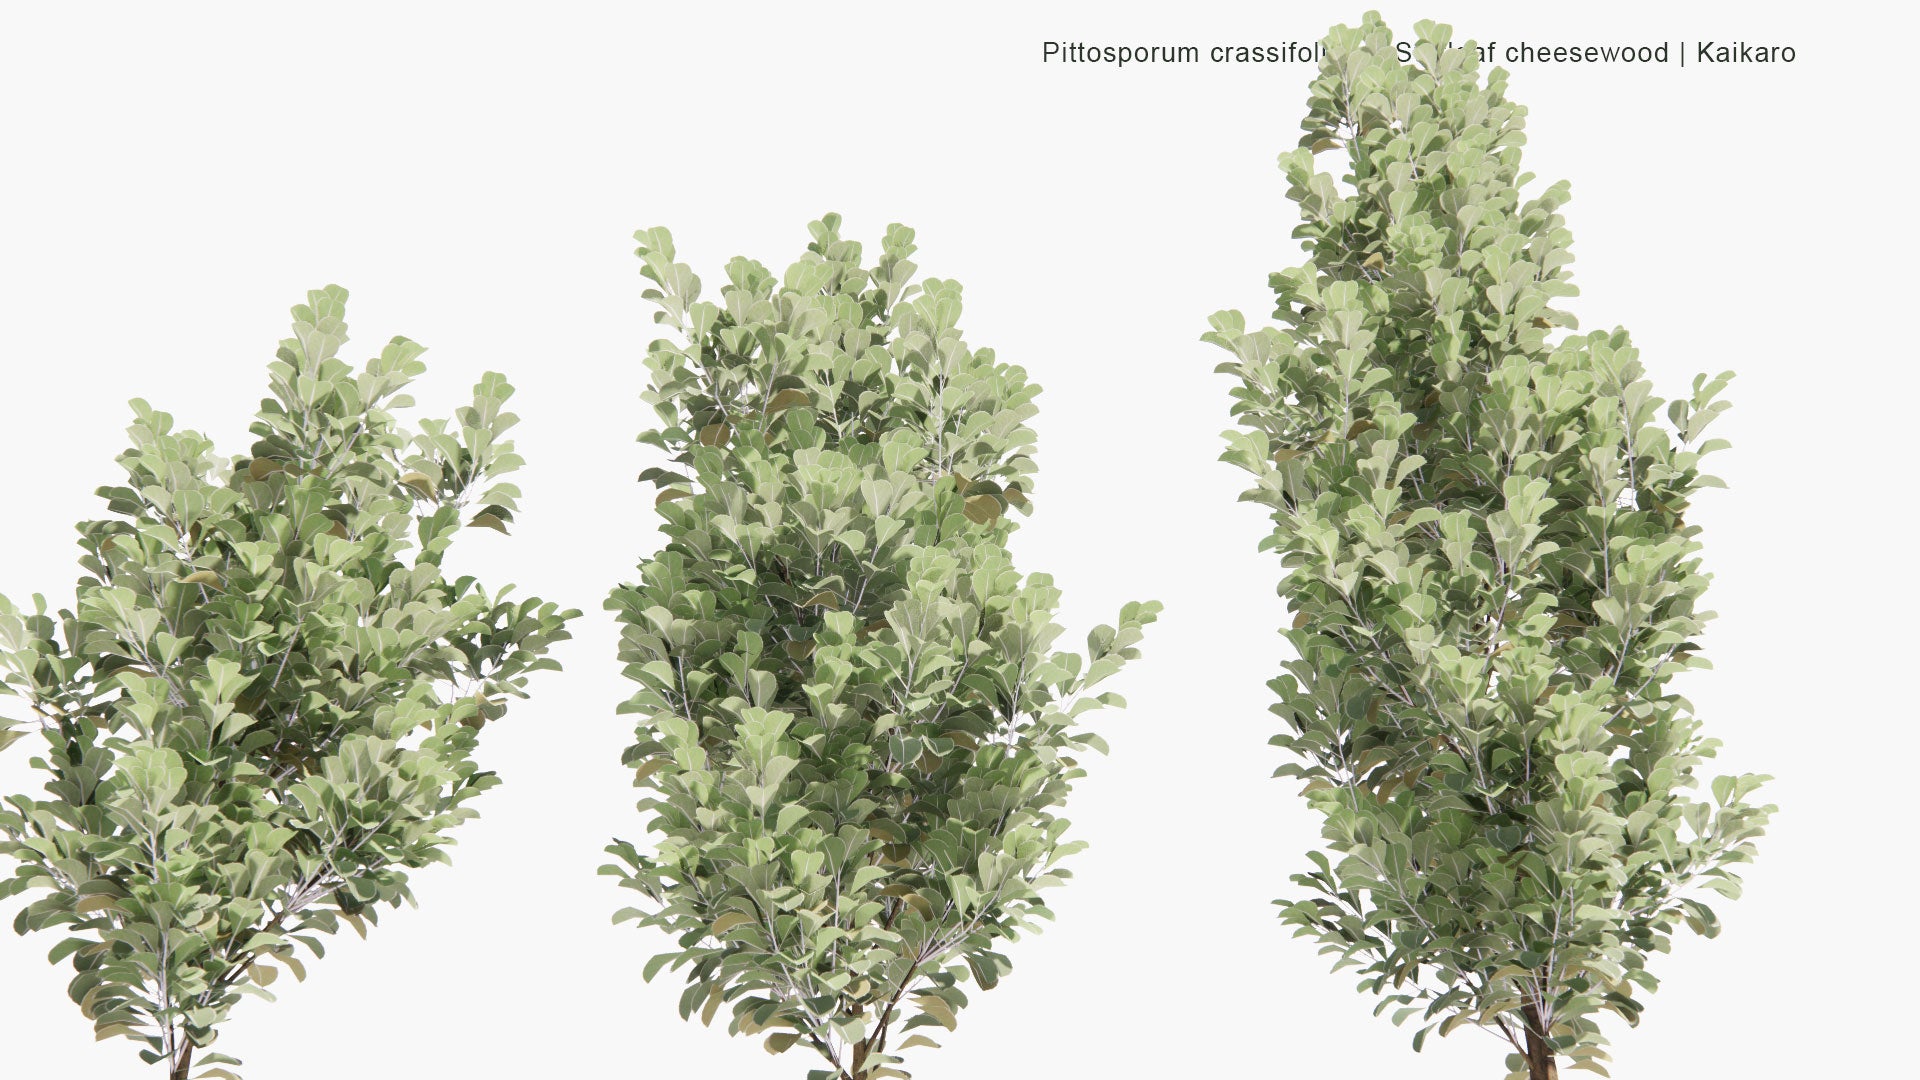 Low Poly Pittosporum Crassifolium - Stiffleaf Cheesewood, Kaikaro, Karo, Kihihi (3D Model)